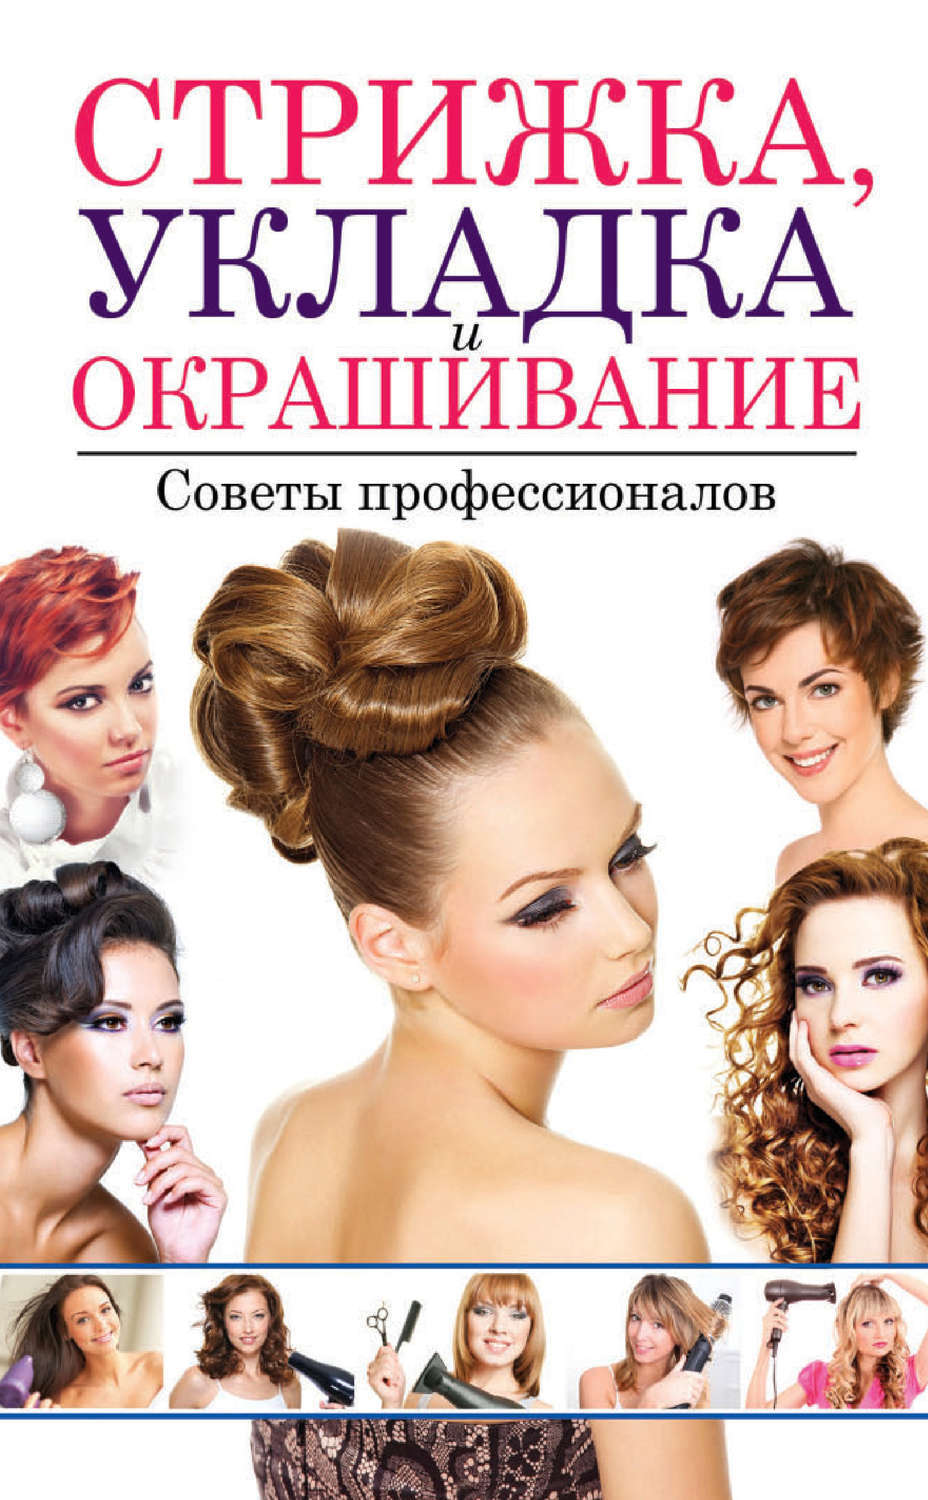 Женские журналы окрашивания волос